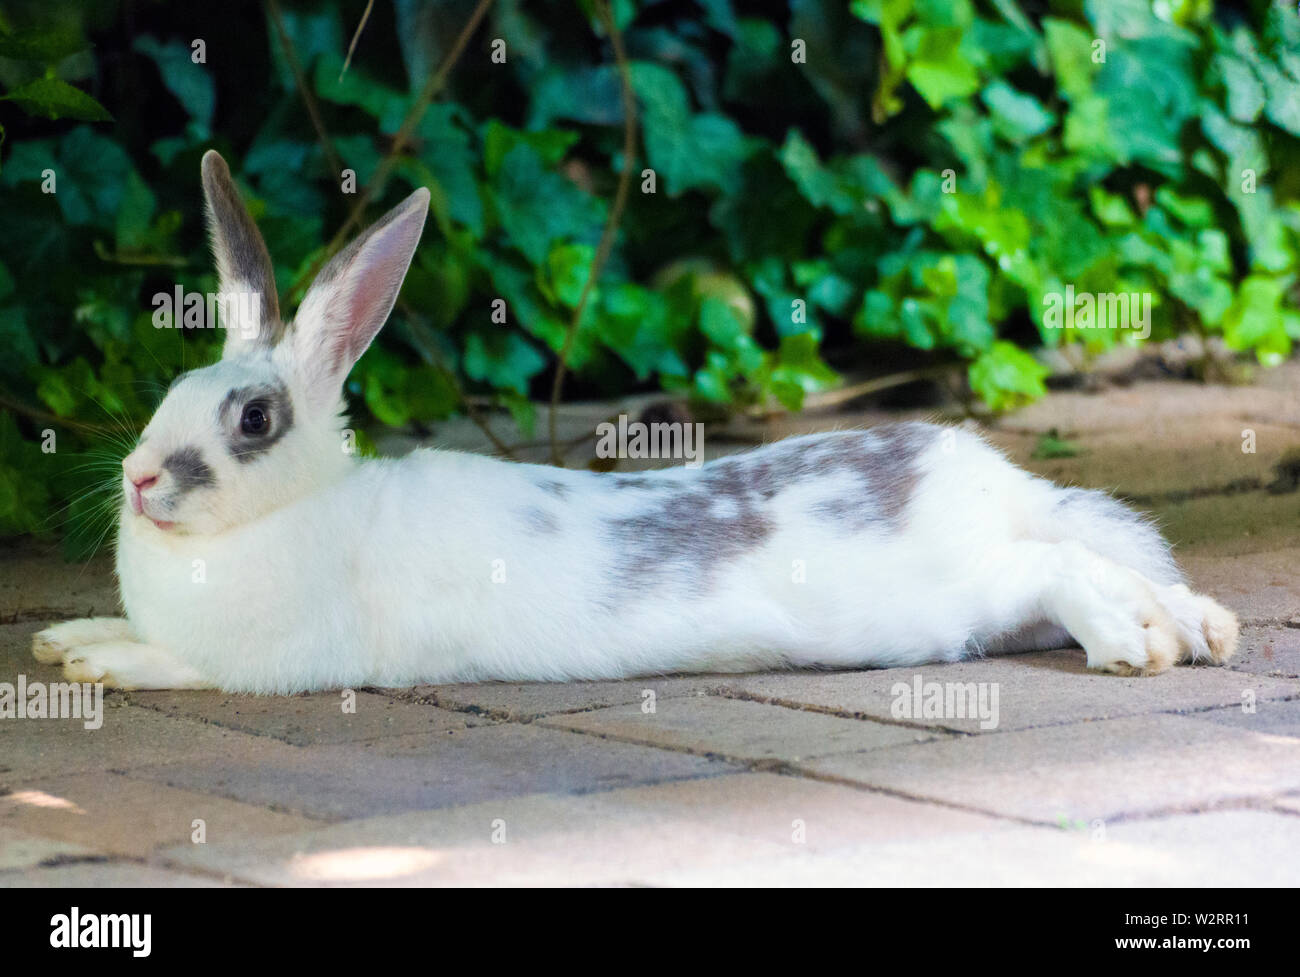 Nahaufnahme eines jungen weißen und grauen Kaninchentieres, das auf dem Straßenbelag ruht. Stockfoto